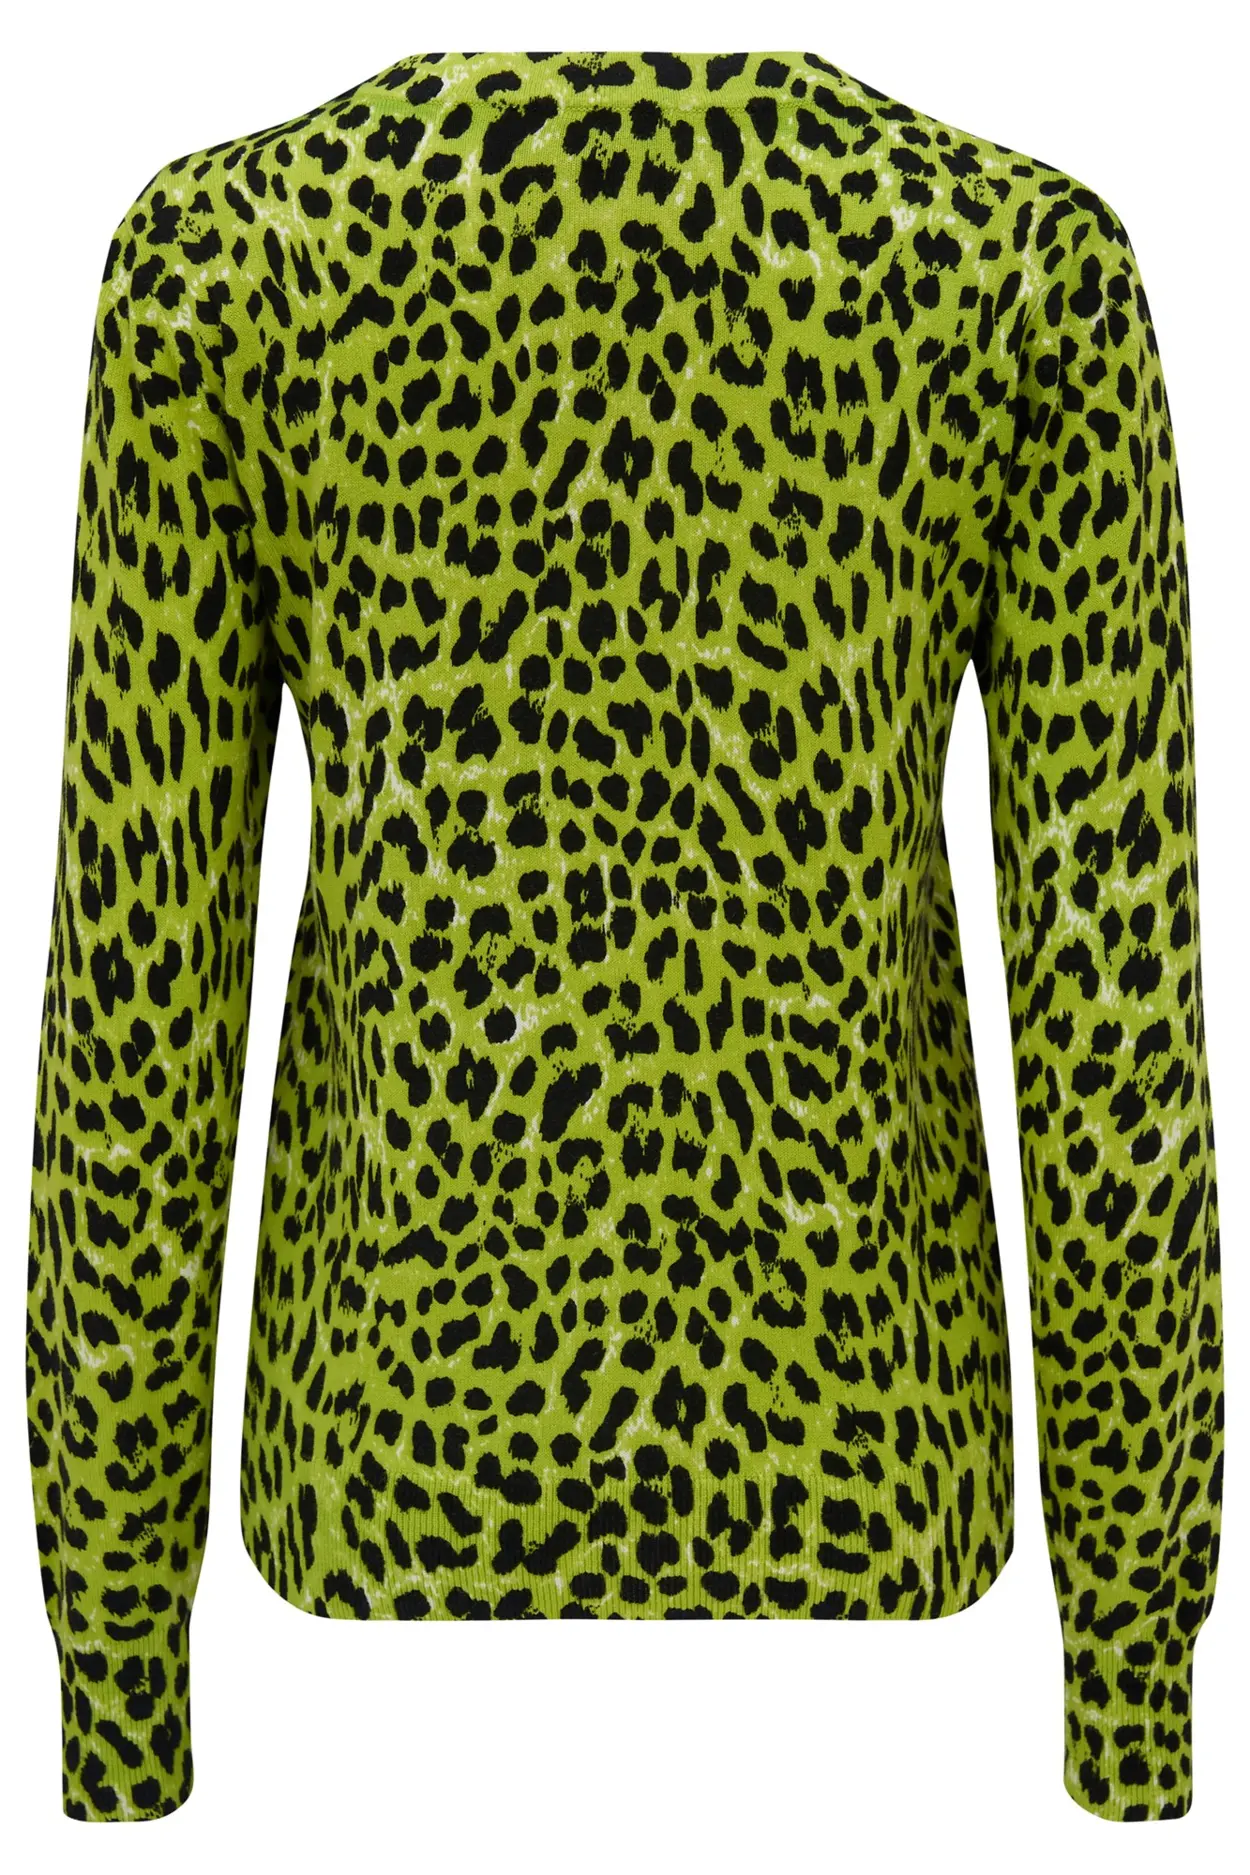 Leopard Print Compact Knit Jumper | Lime/Black Animal | Pour Moi